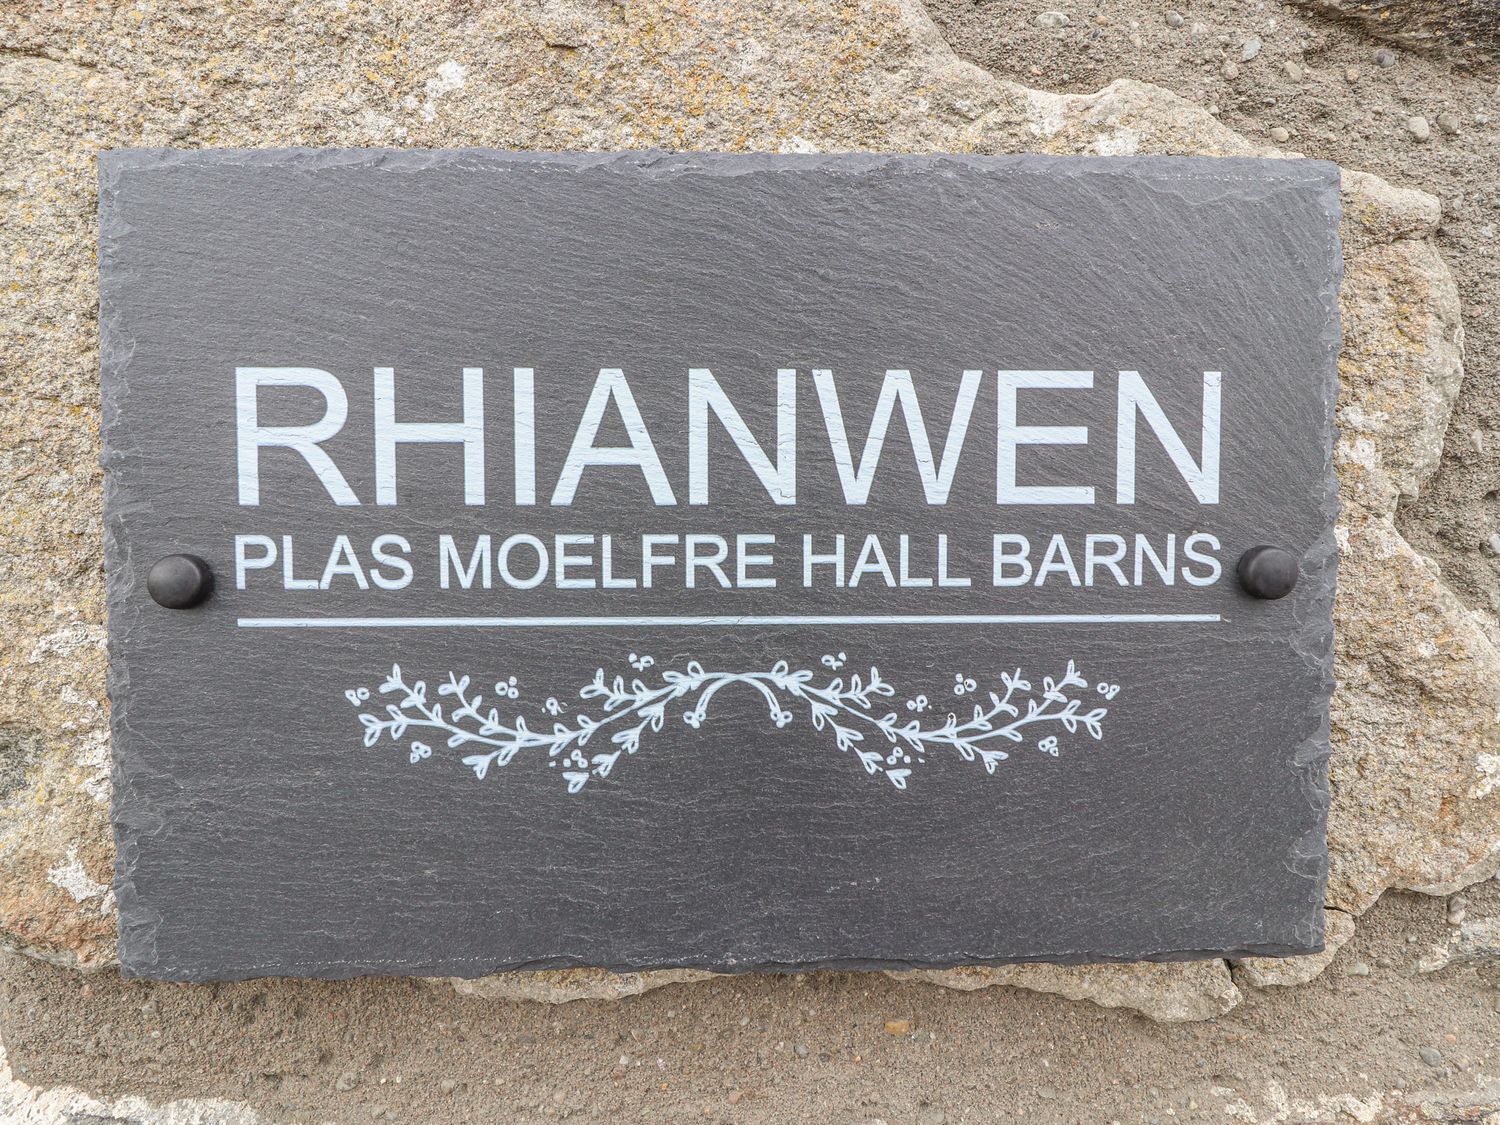 Rhianwen, Plas Moelfre Hall Barns, Llanrhaeadr-ym-mochnant